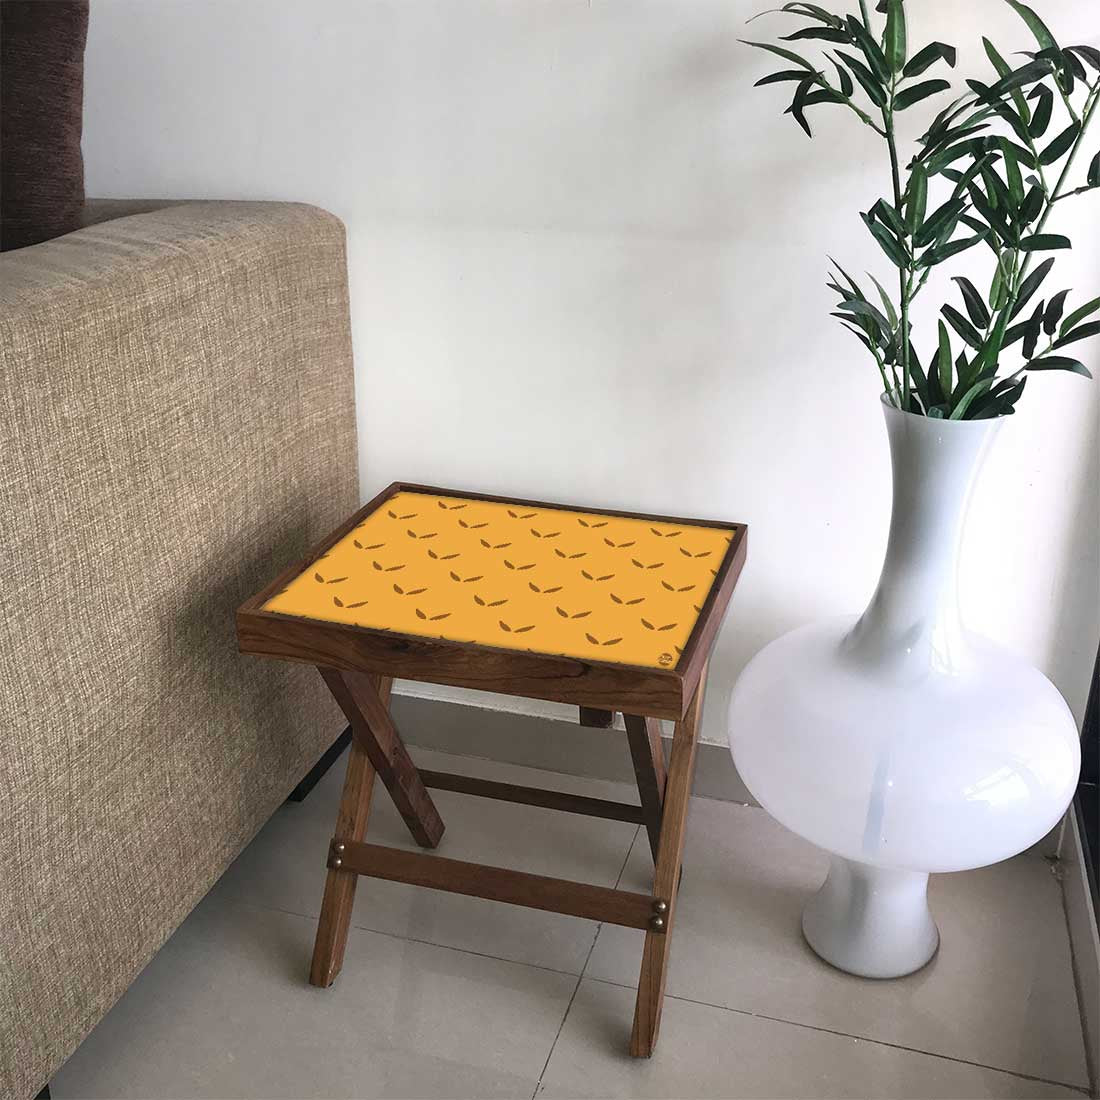 Nutcase Folding Wooden Side Table - Teak Wood -Mustard